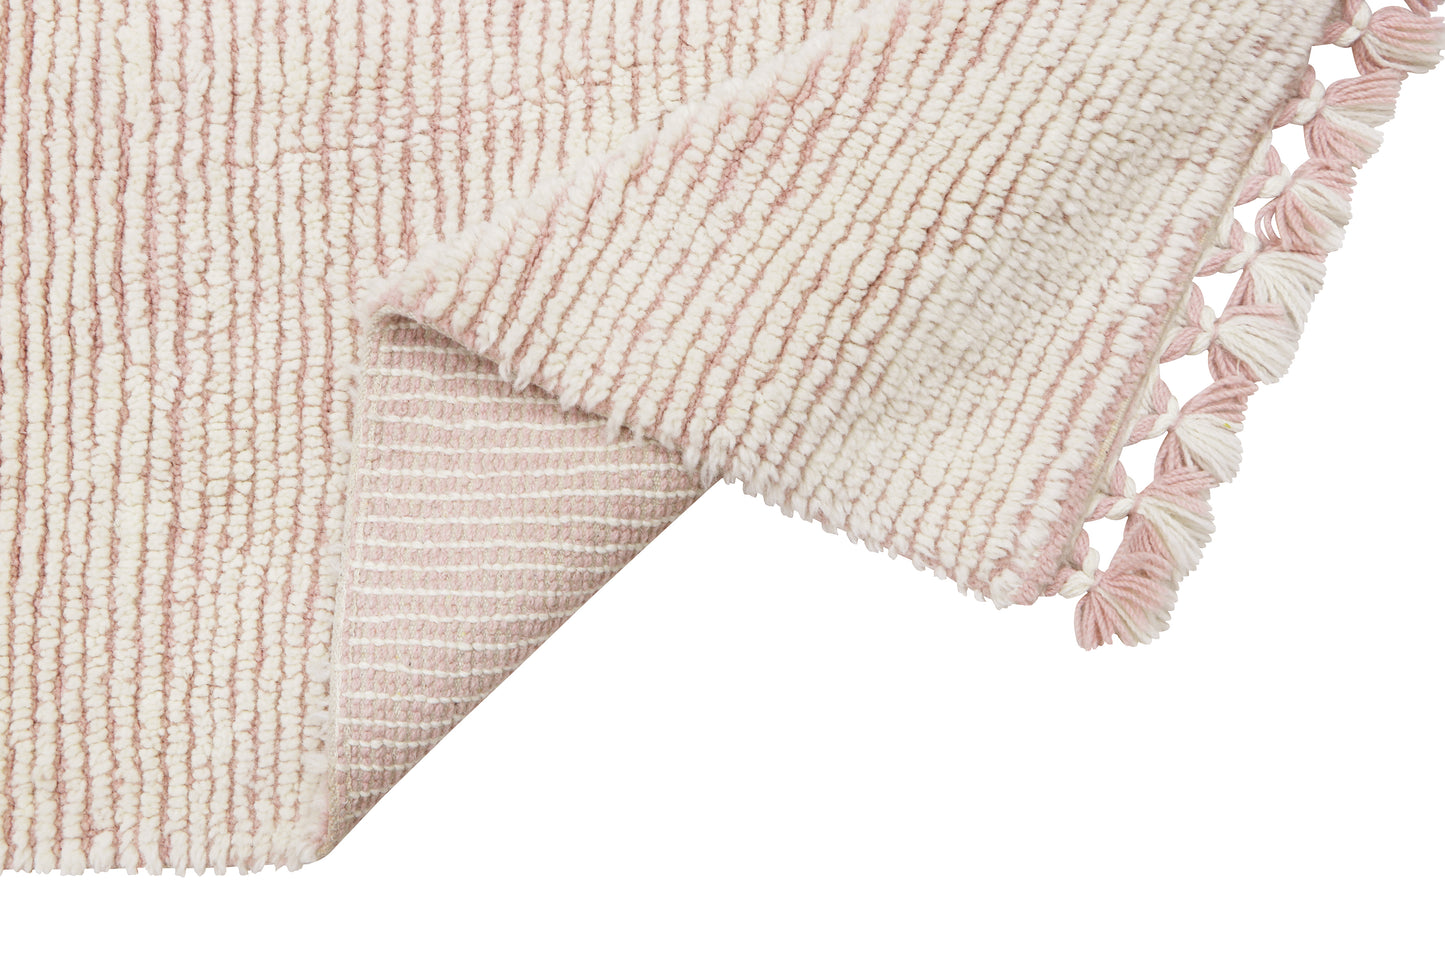 Woolable washable rug – Koa Pink